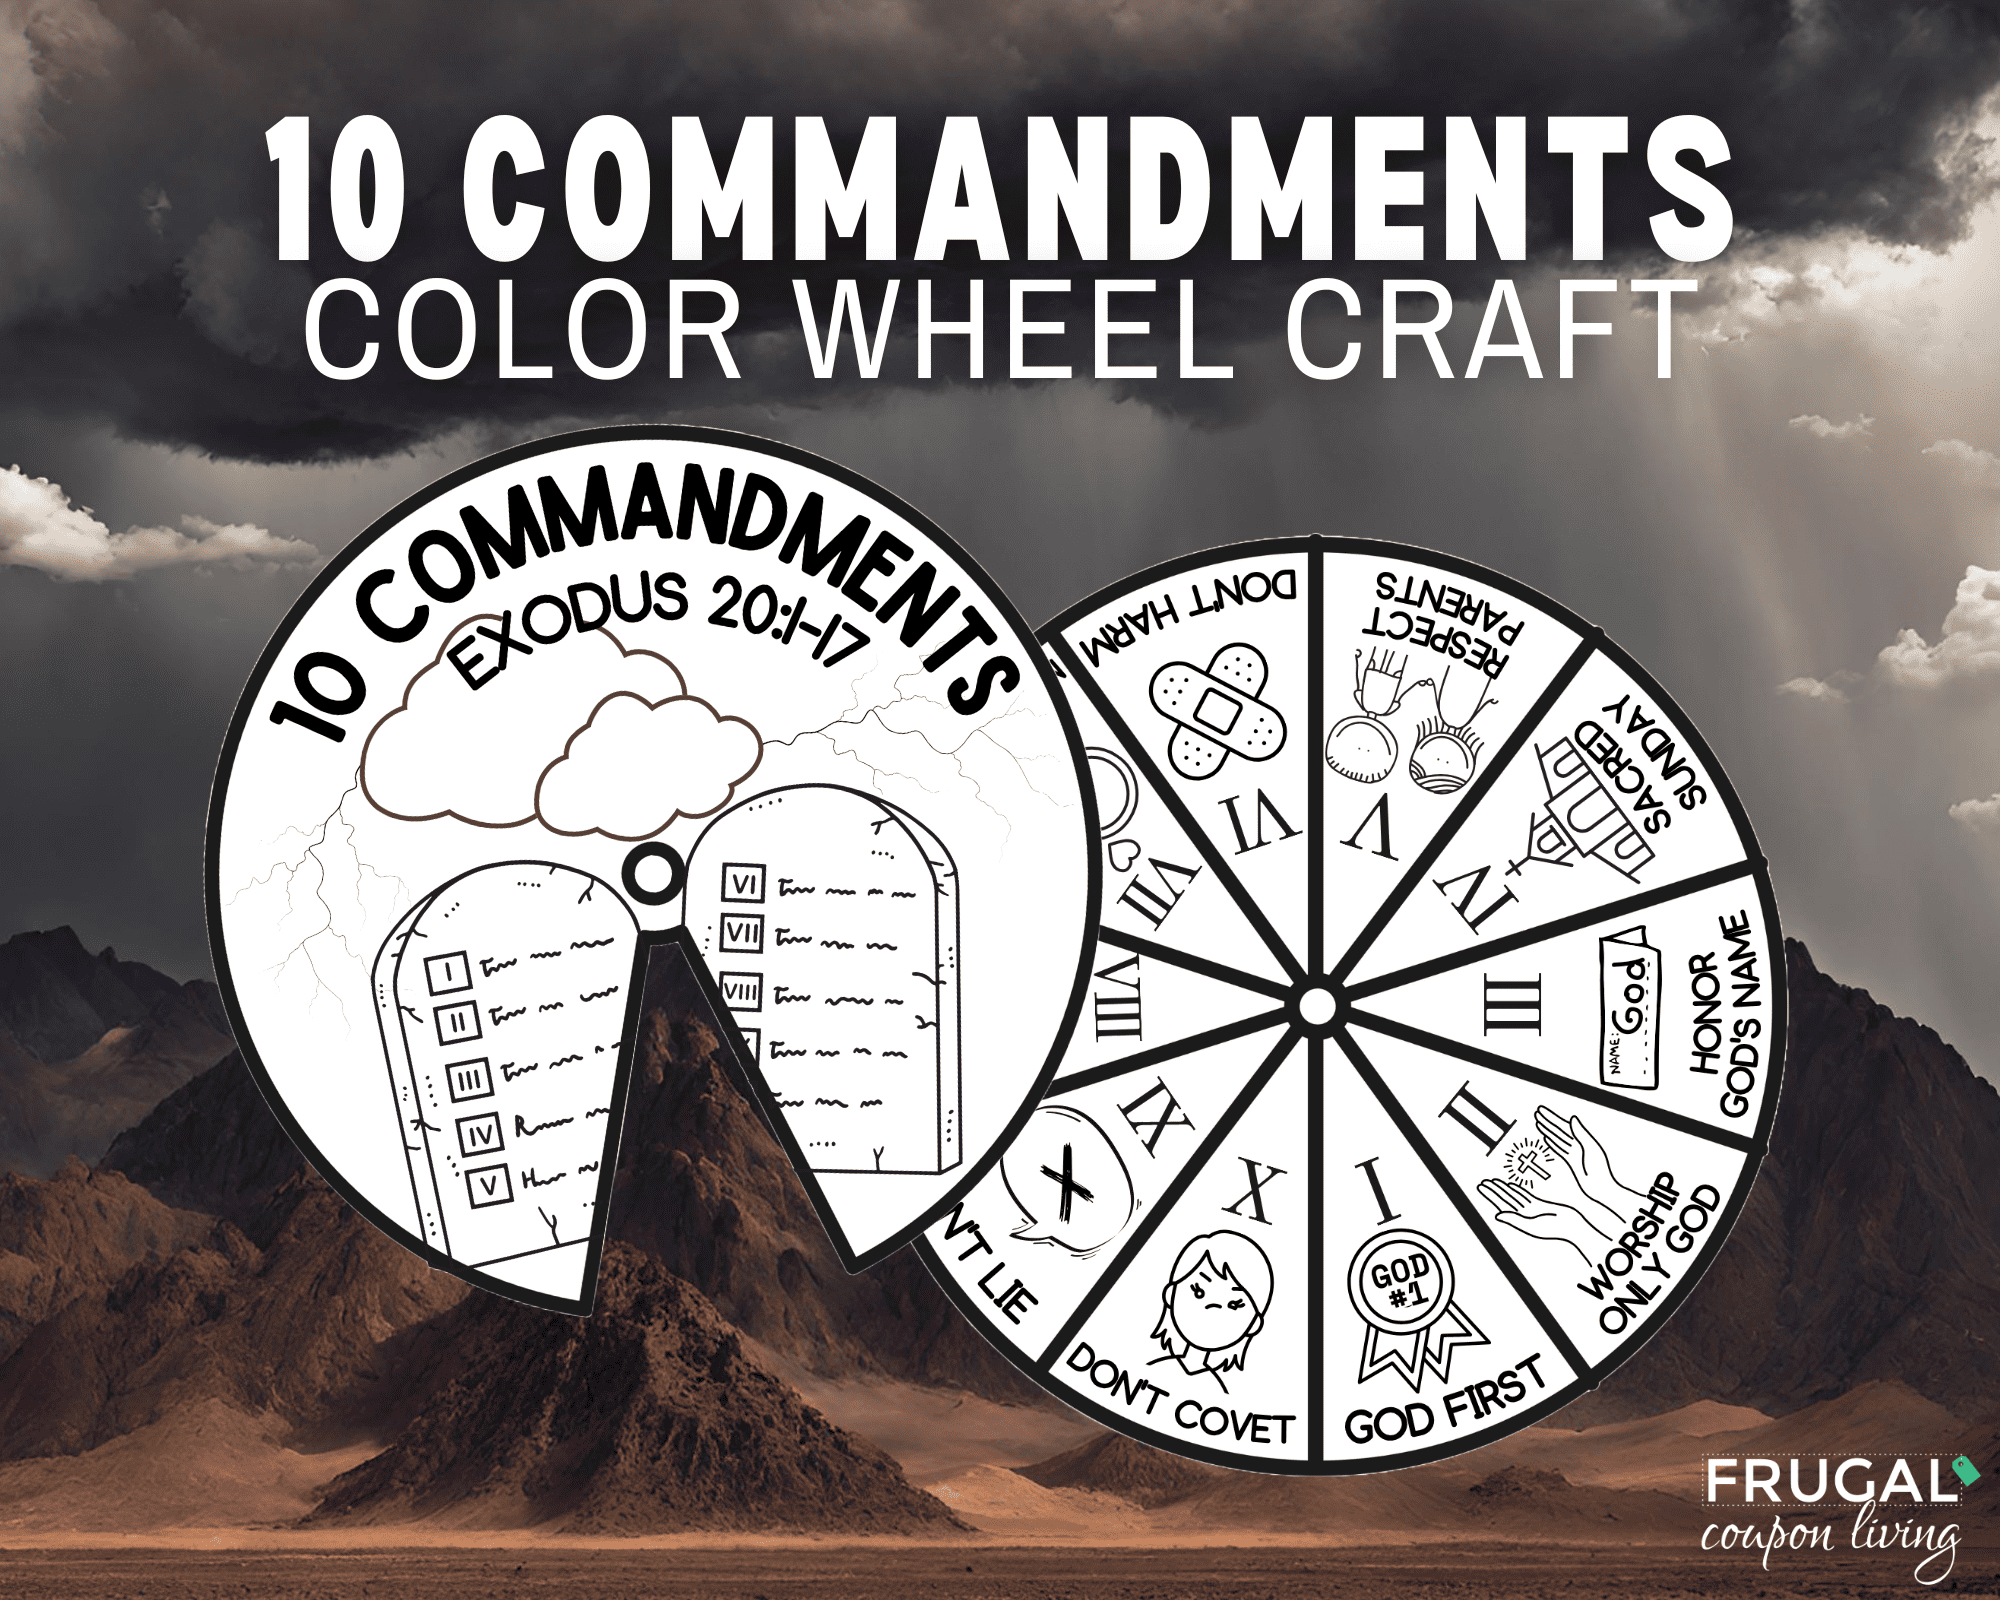 the ten commandments coloring wheel